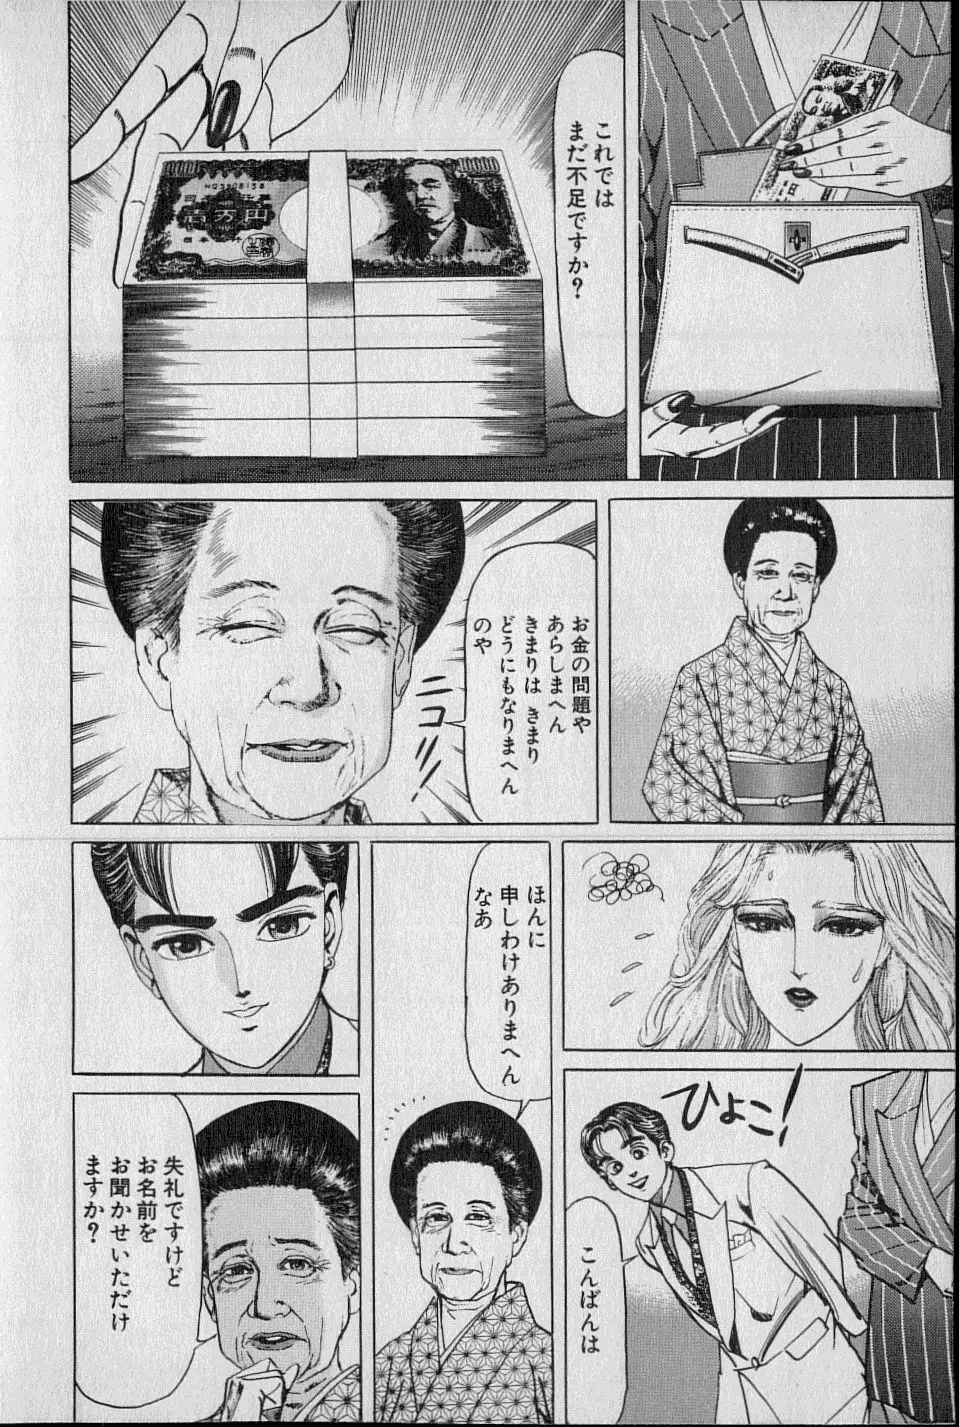 Kouryuu no Mimi Volume 02 29ページ